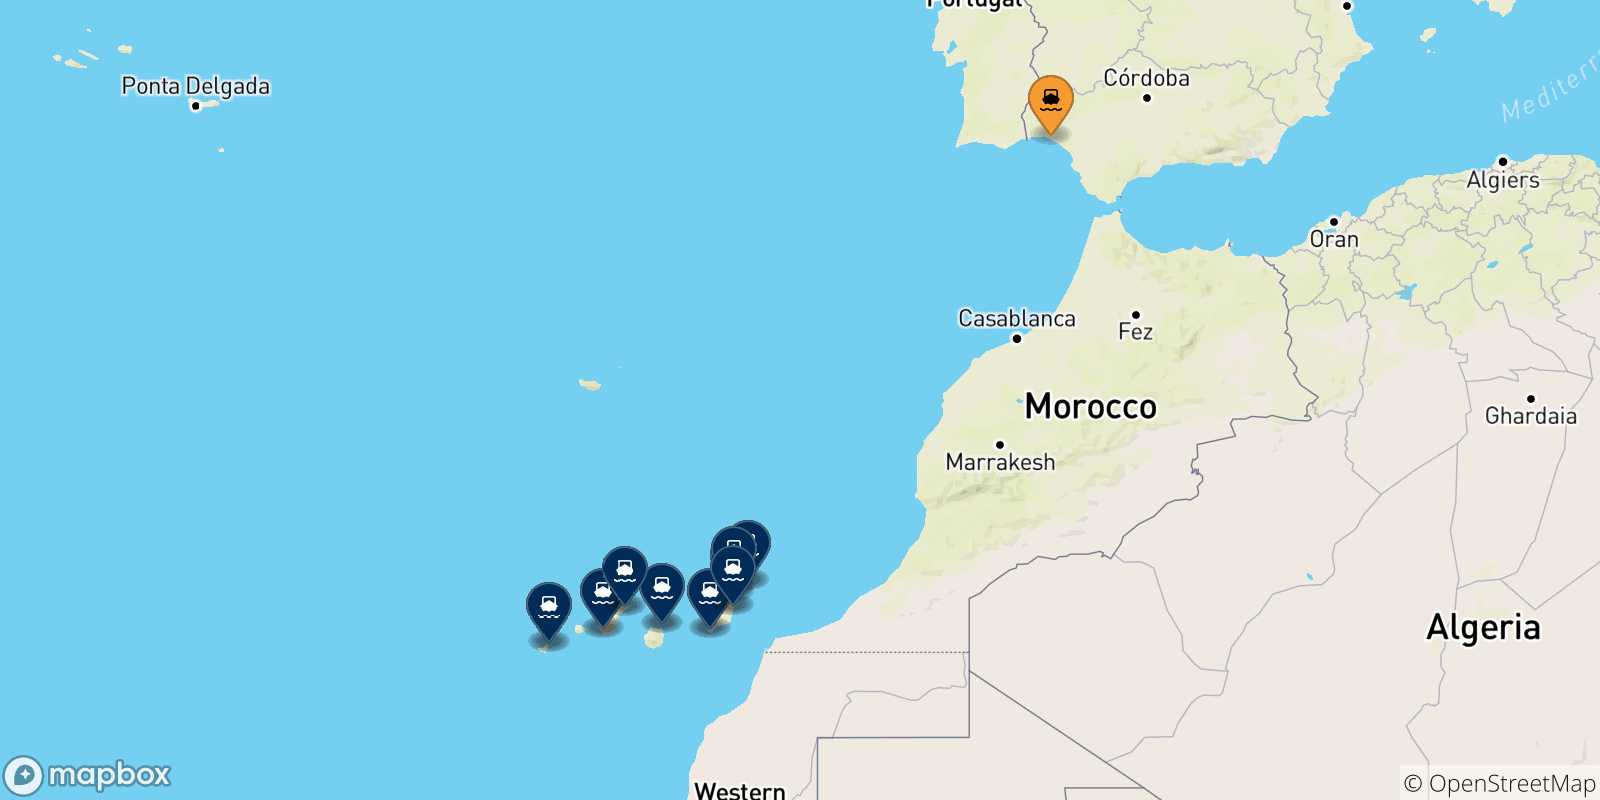 Mappa delle possibili rotte tra la Spagna e le Isole Canarie